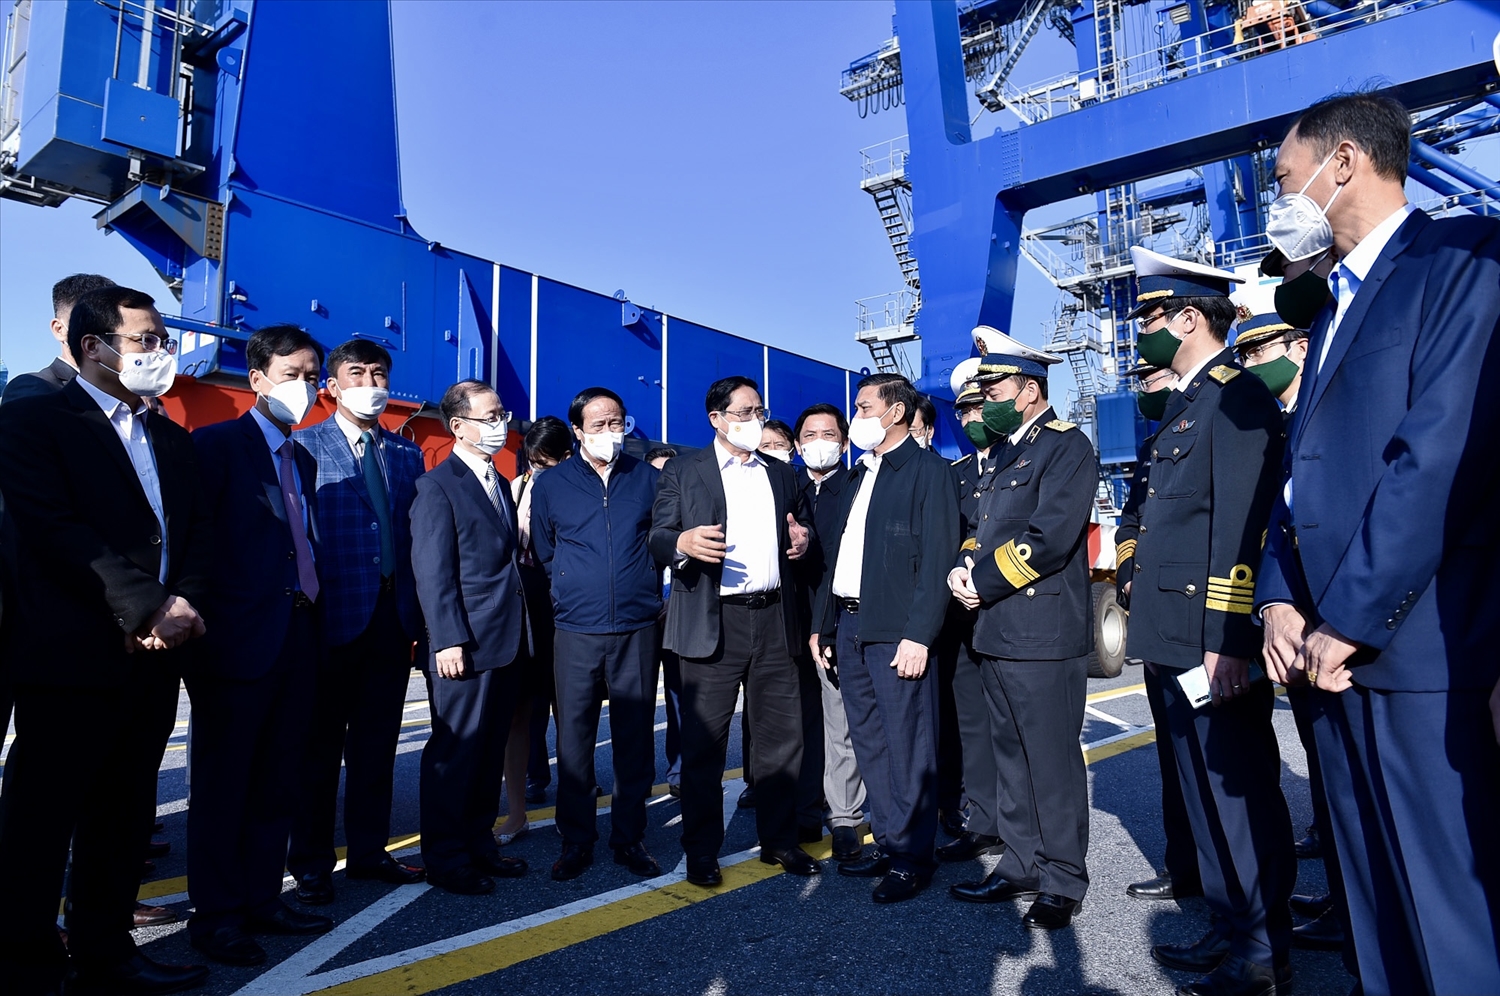 Trò chuyện với các lực lượng làm nhiệm vụ tại cảng, Thủ tướng nêu rõ, với sự phát triển của nền kinh tế và trong bối cảnh Việt Nam hội nhập quốc tế sâu rộng, tham gia 17 hiệp định thương mại tự do, nhu cầu vận tải hàng hóa ngày càng lớn. Ảnh: VGP/Nhật Bắc